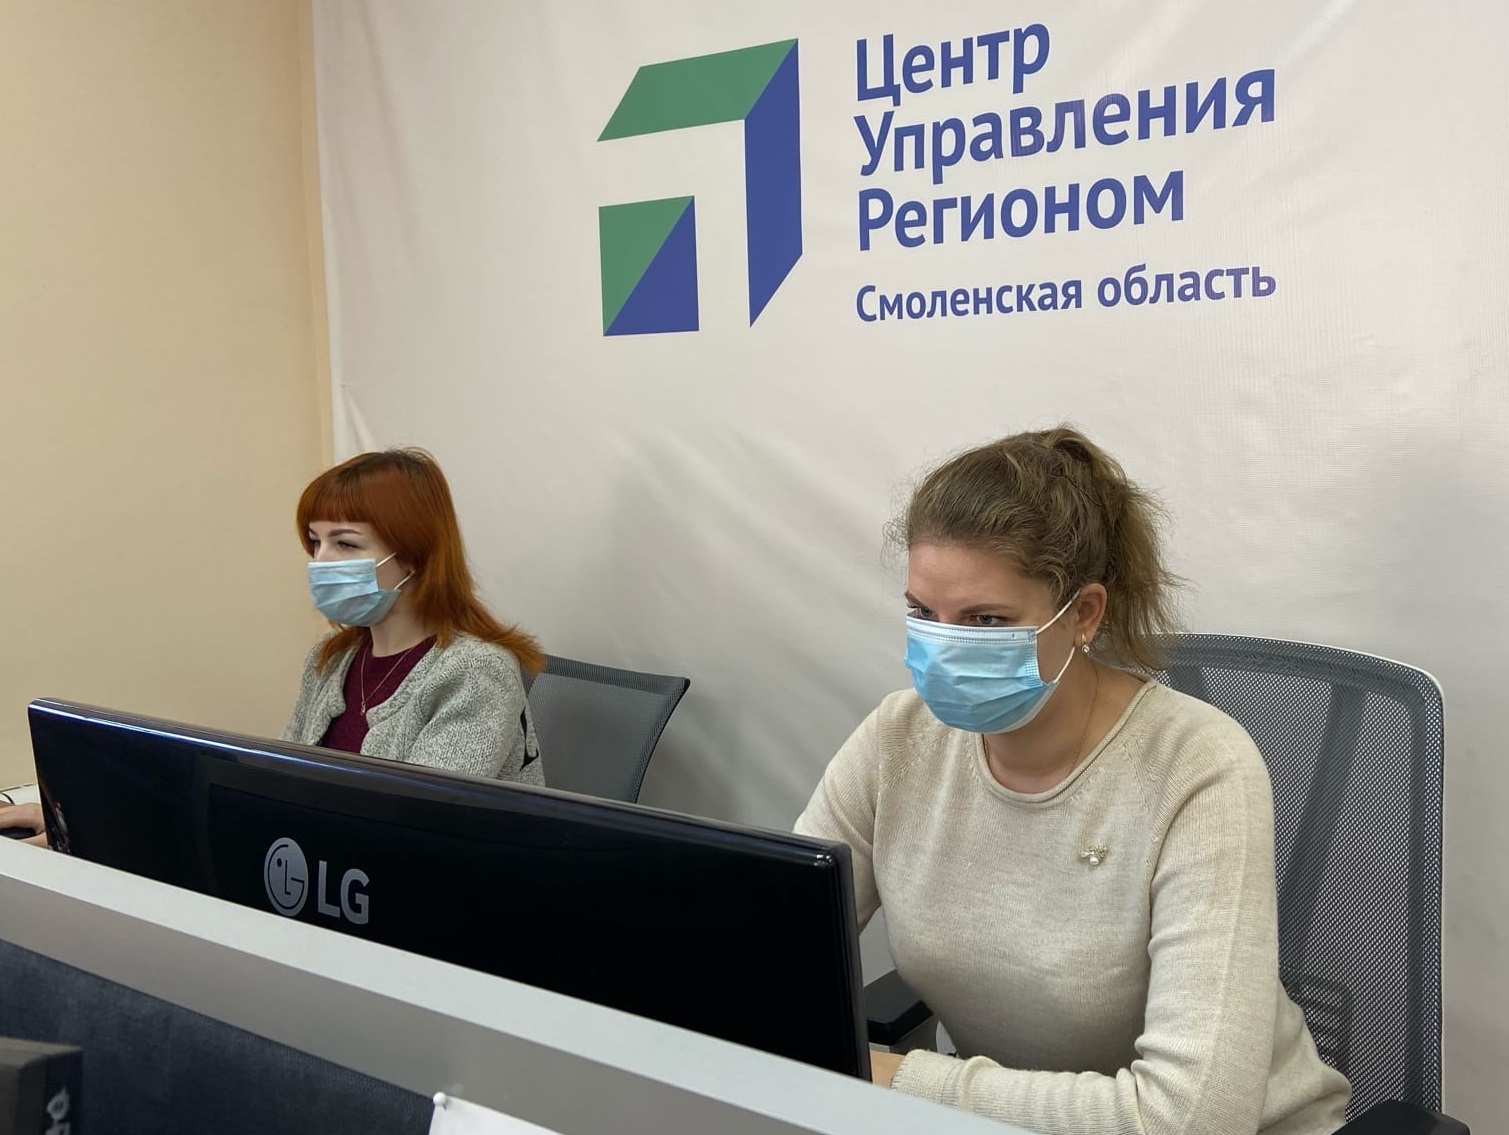 690 сообщений поступило в ЦУР Смоленской области за минувшую неделю